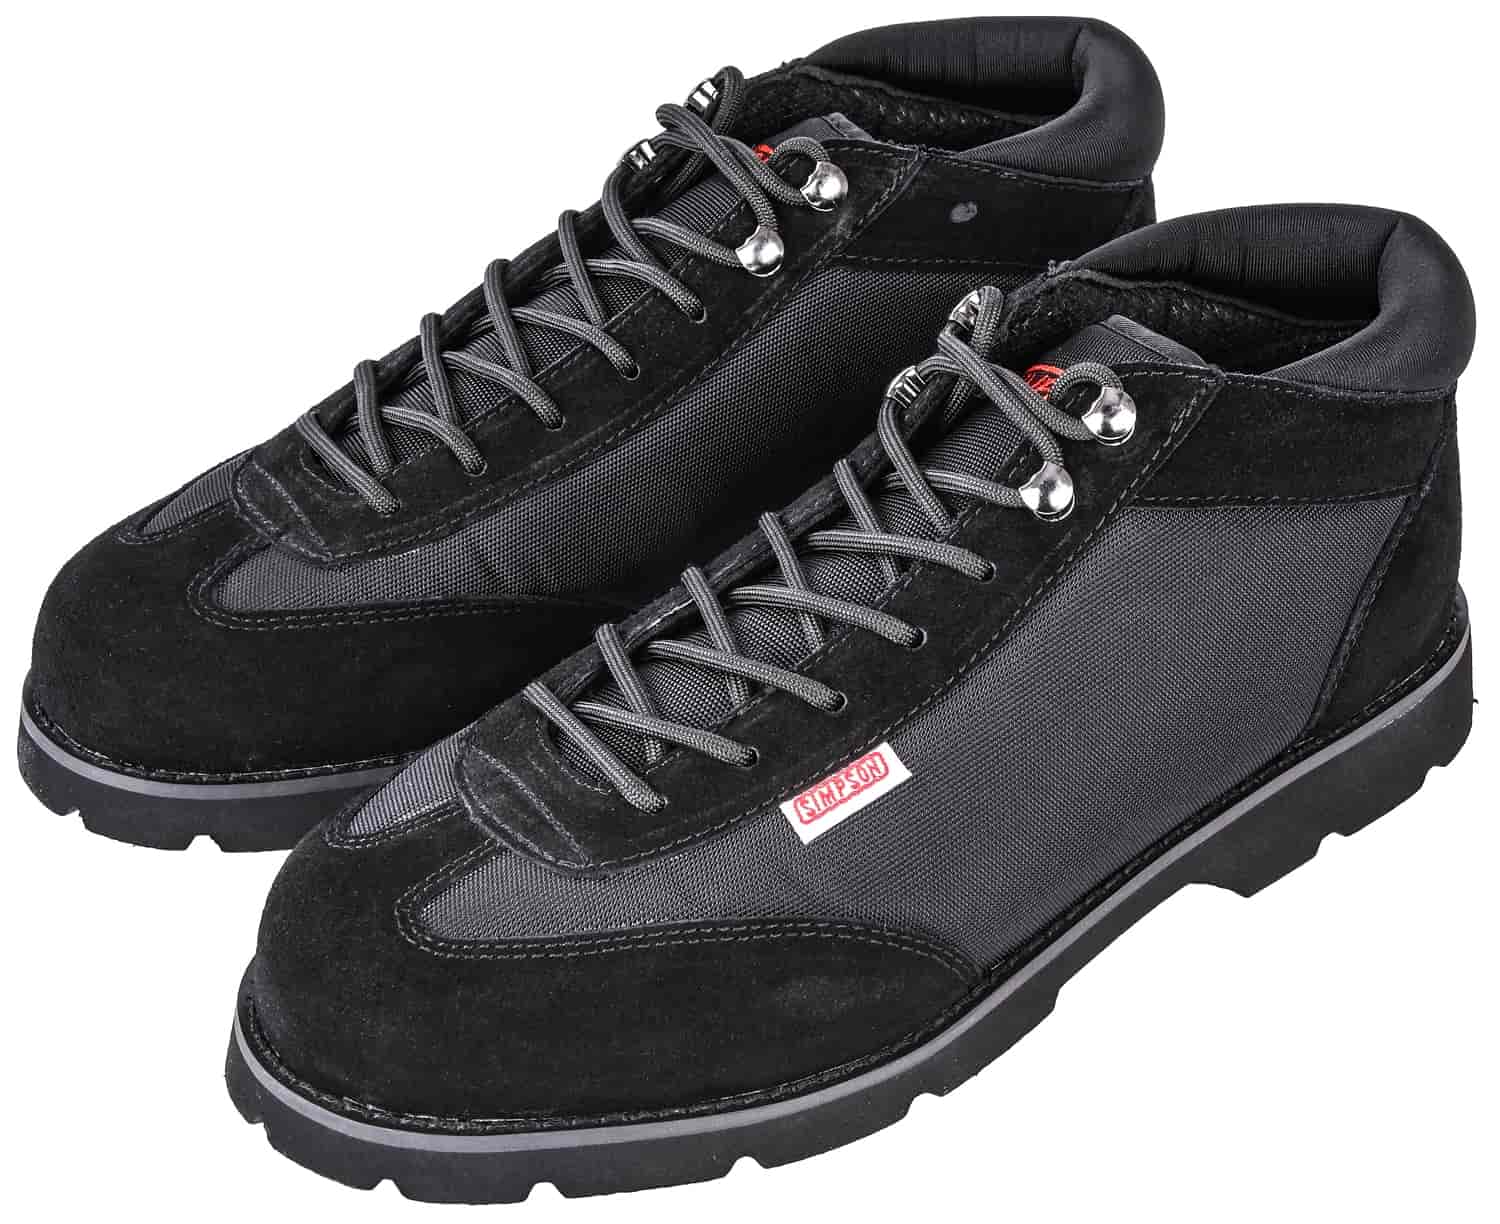 size 13 black shoes